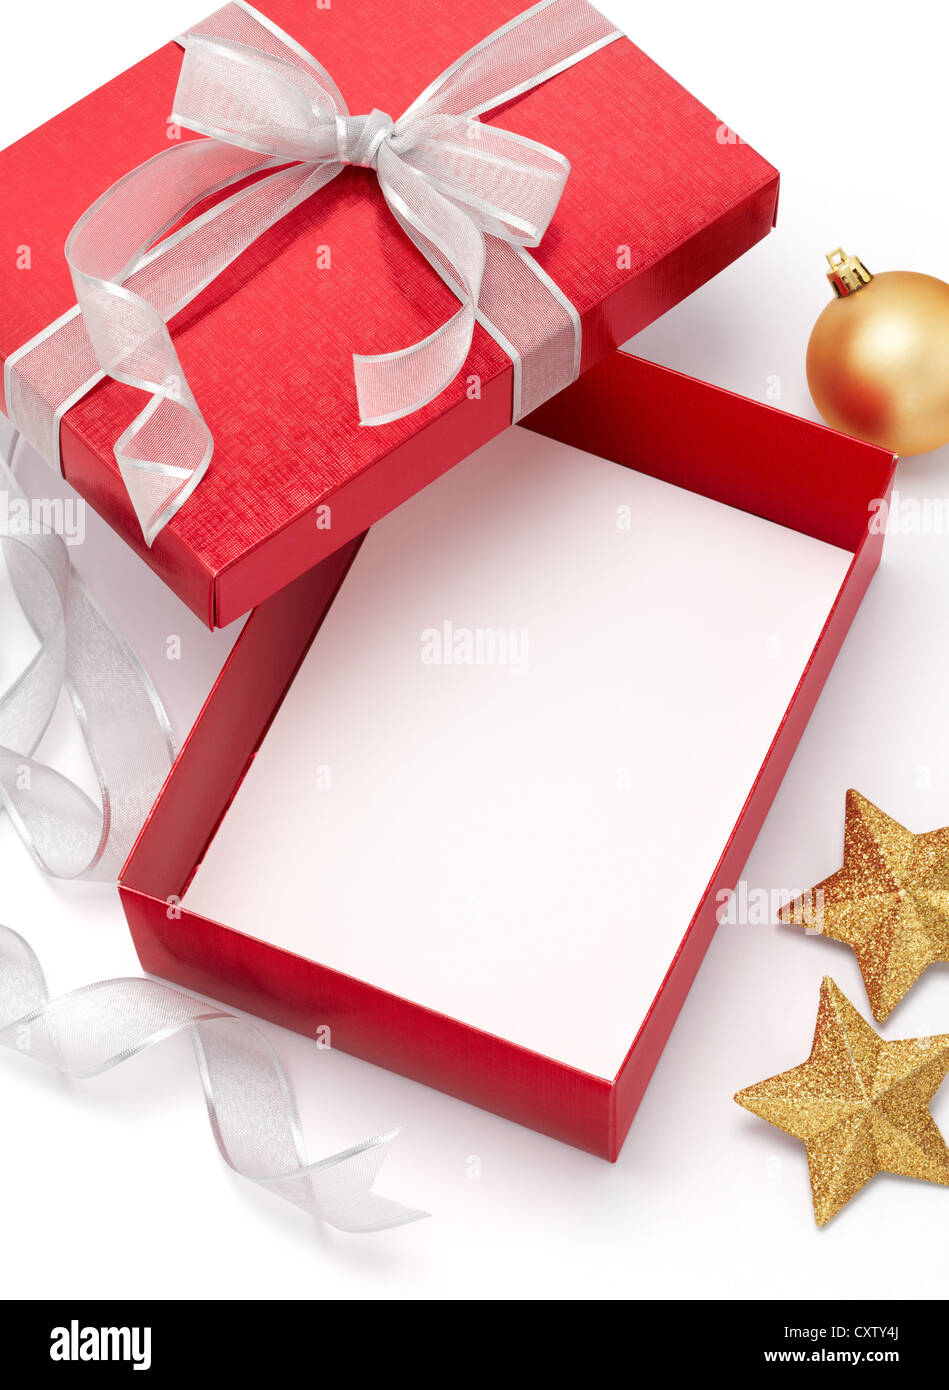 Boîte cadeau vide avec des boules de Noël sur fond blanc Photo